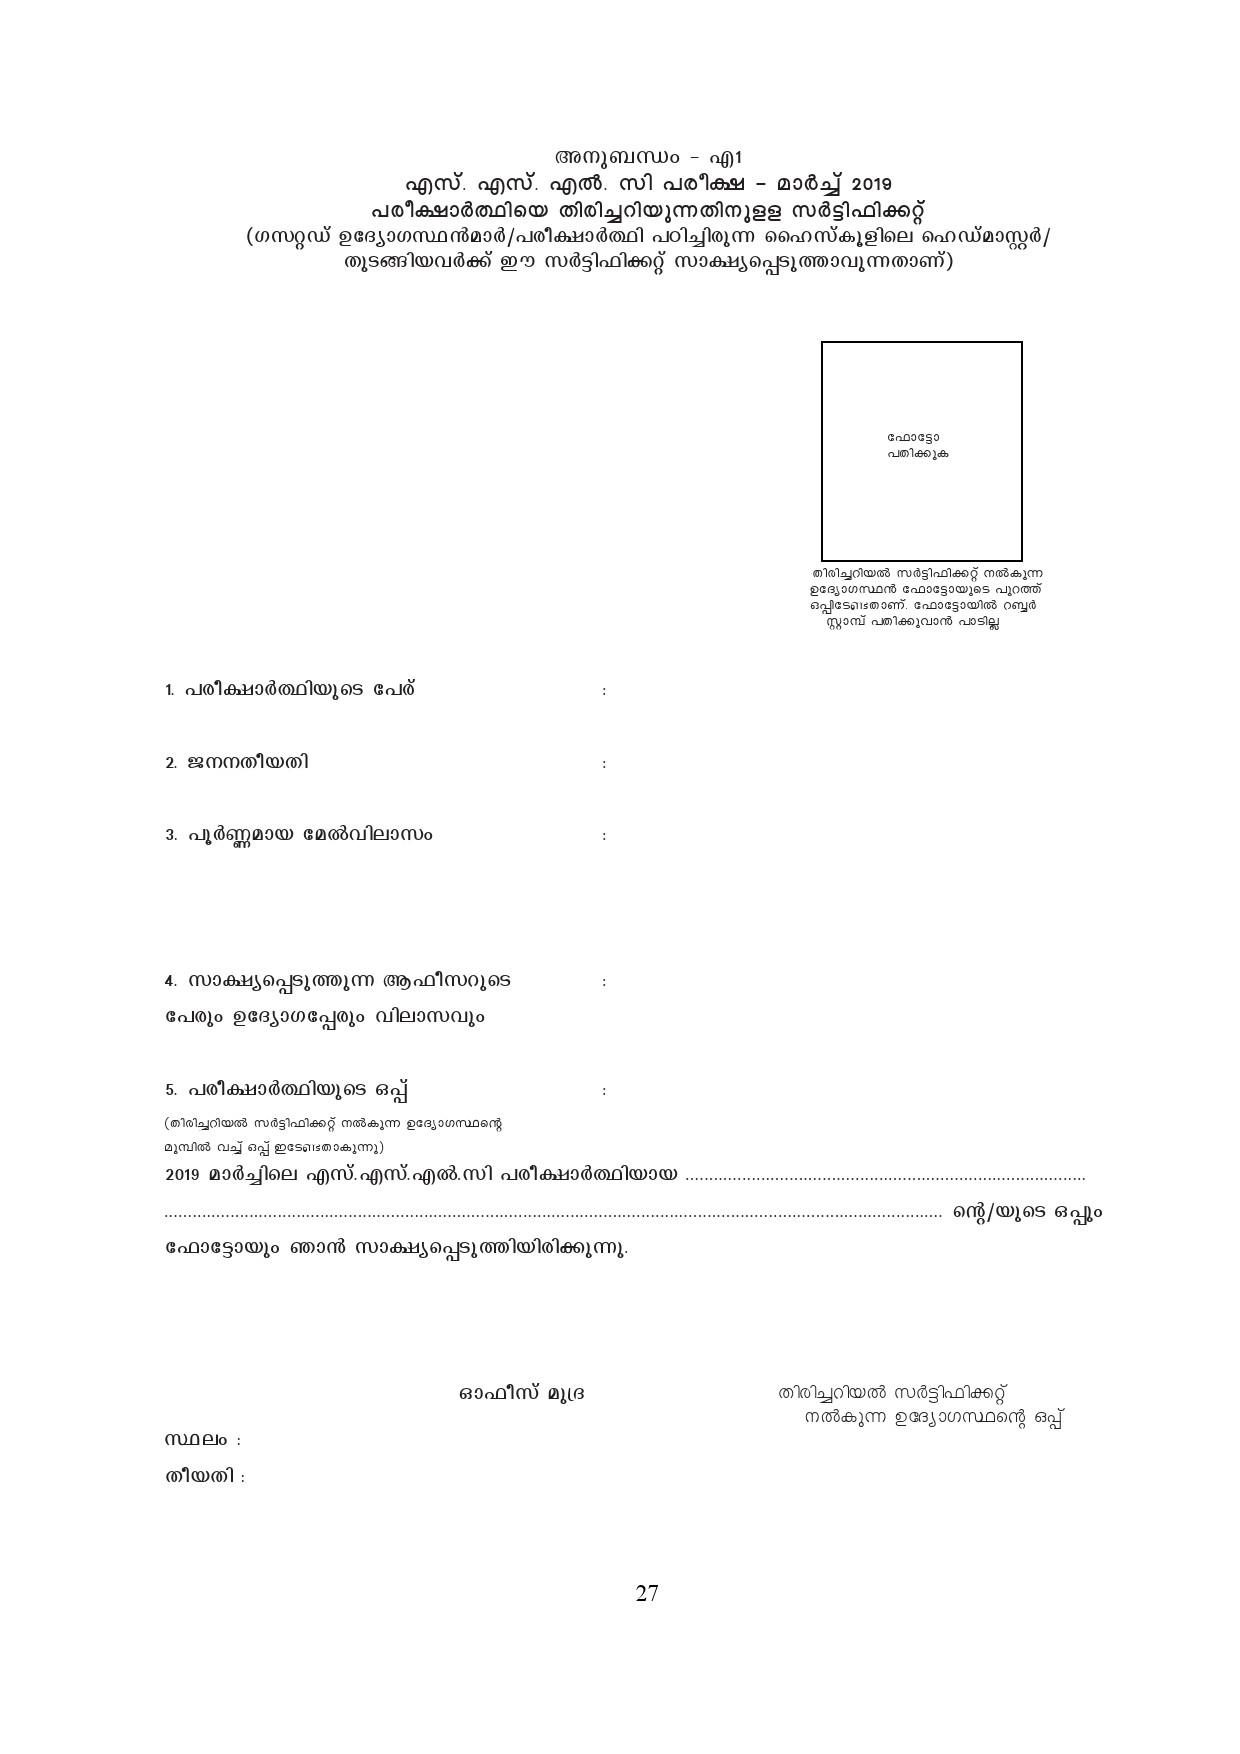 Kerala SSLC Exam Result 2019 - Notification Image 27